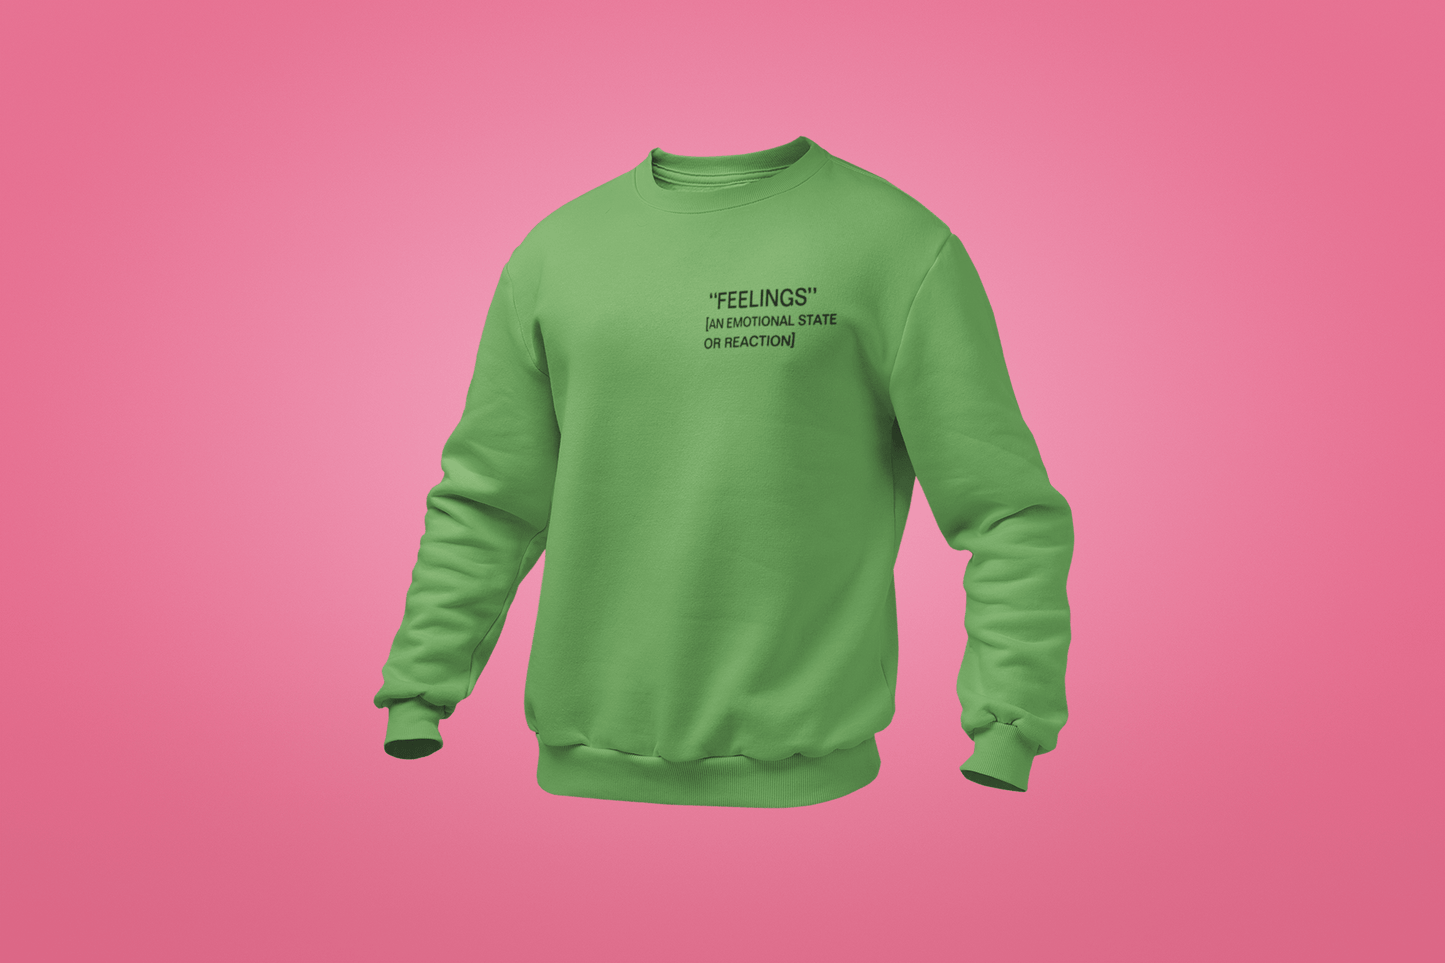 This is The Remix Sweatshirt FEELINGS - Crewneck Light Sweatshirt